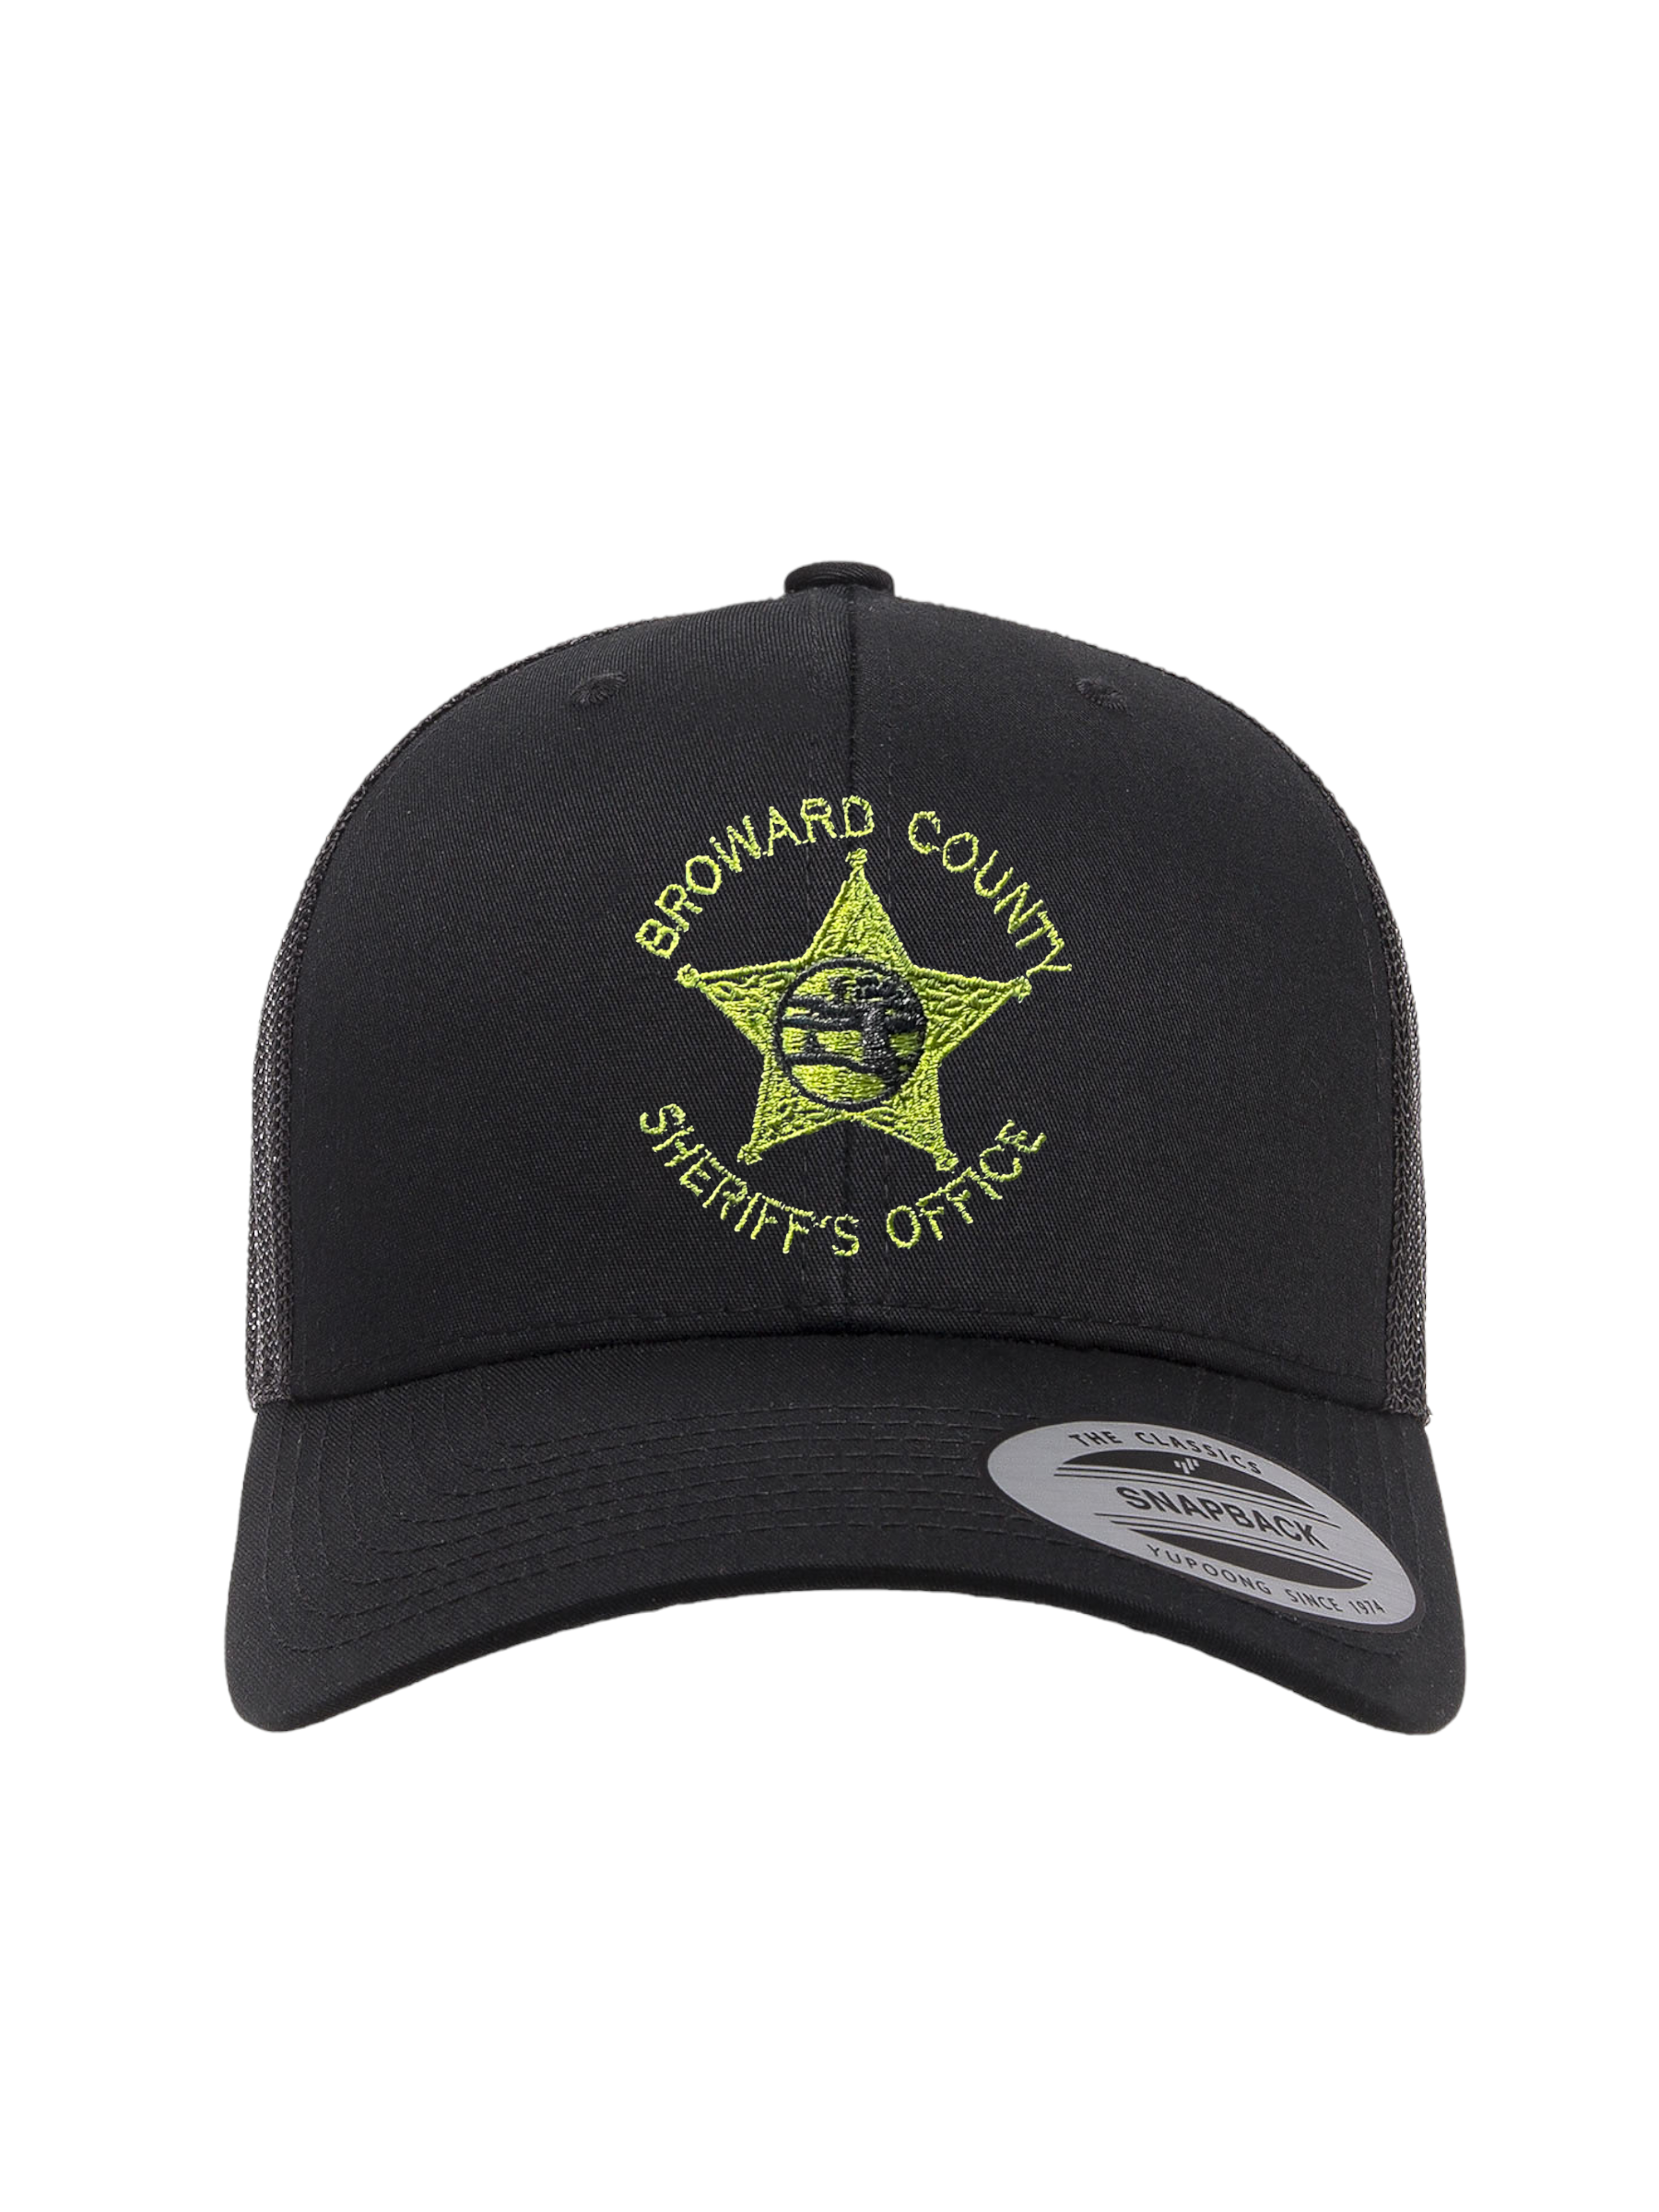 Broward Sheriffs Office SnapBack Trucker Hat